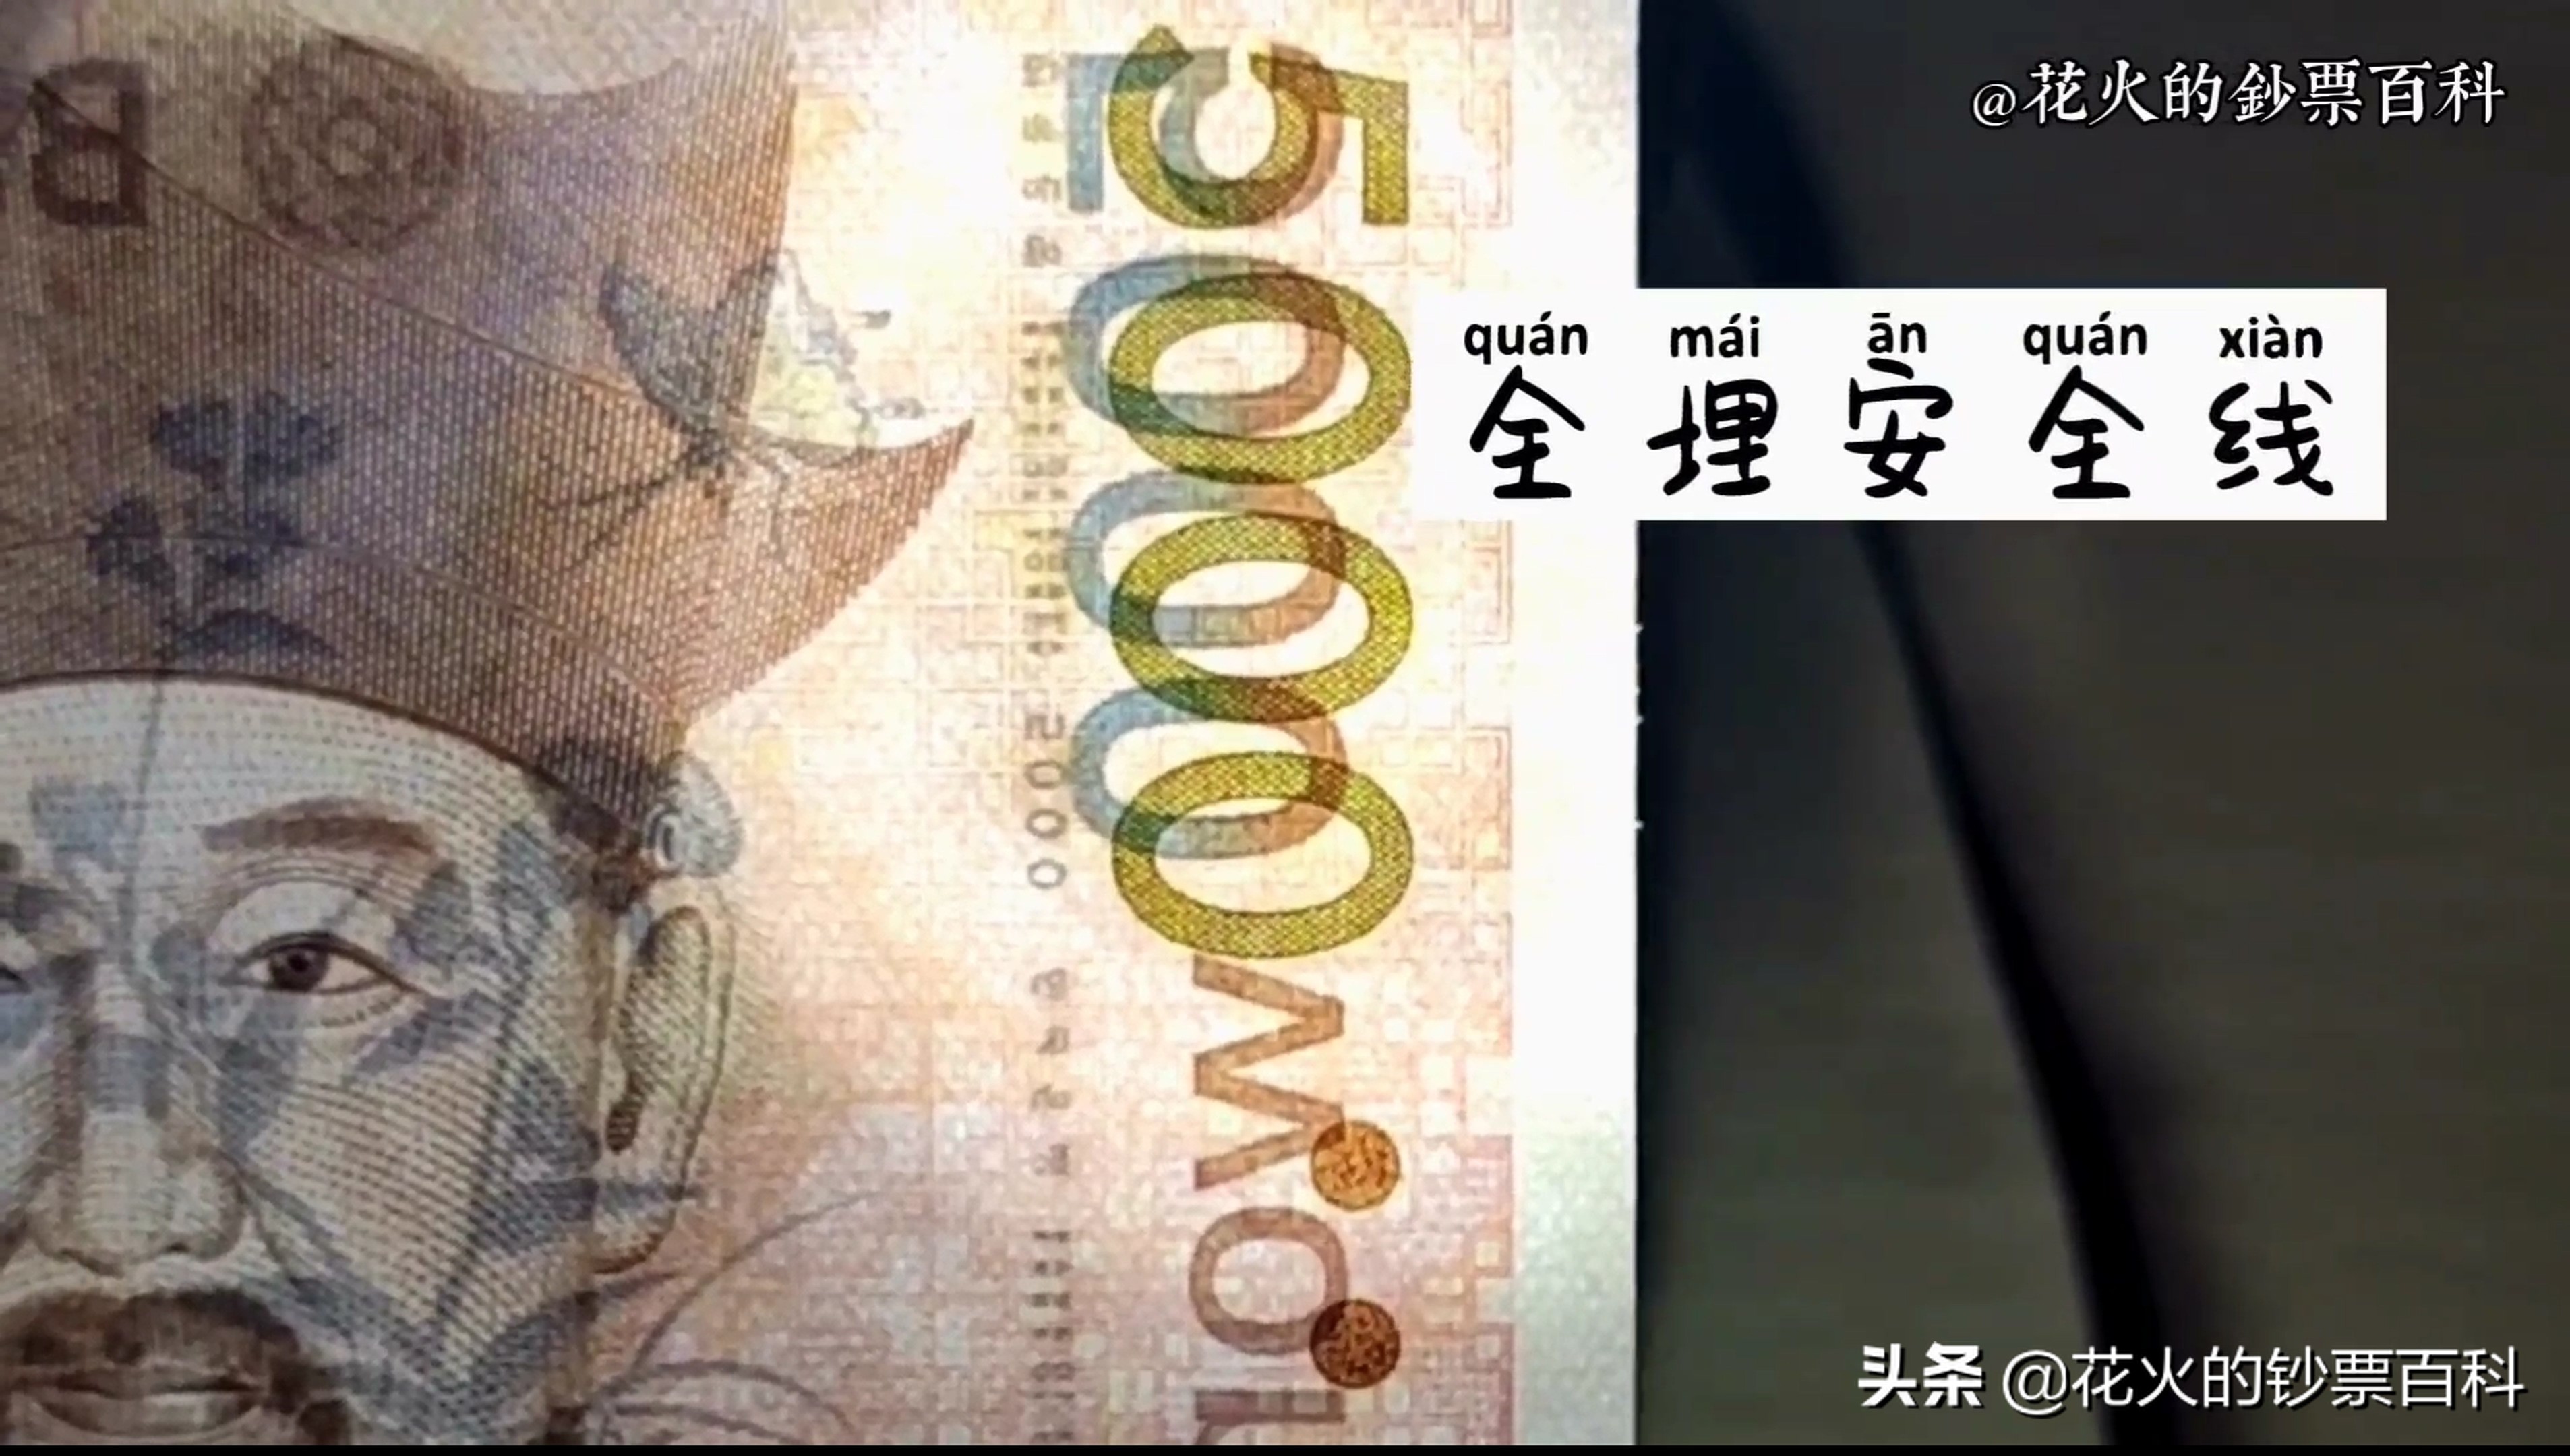 韩国5000韩元纸币：韩国最有名的母子成就了这张钞票